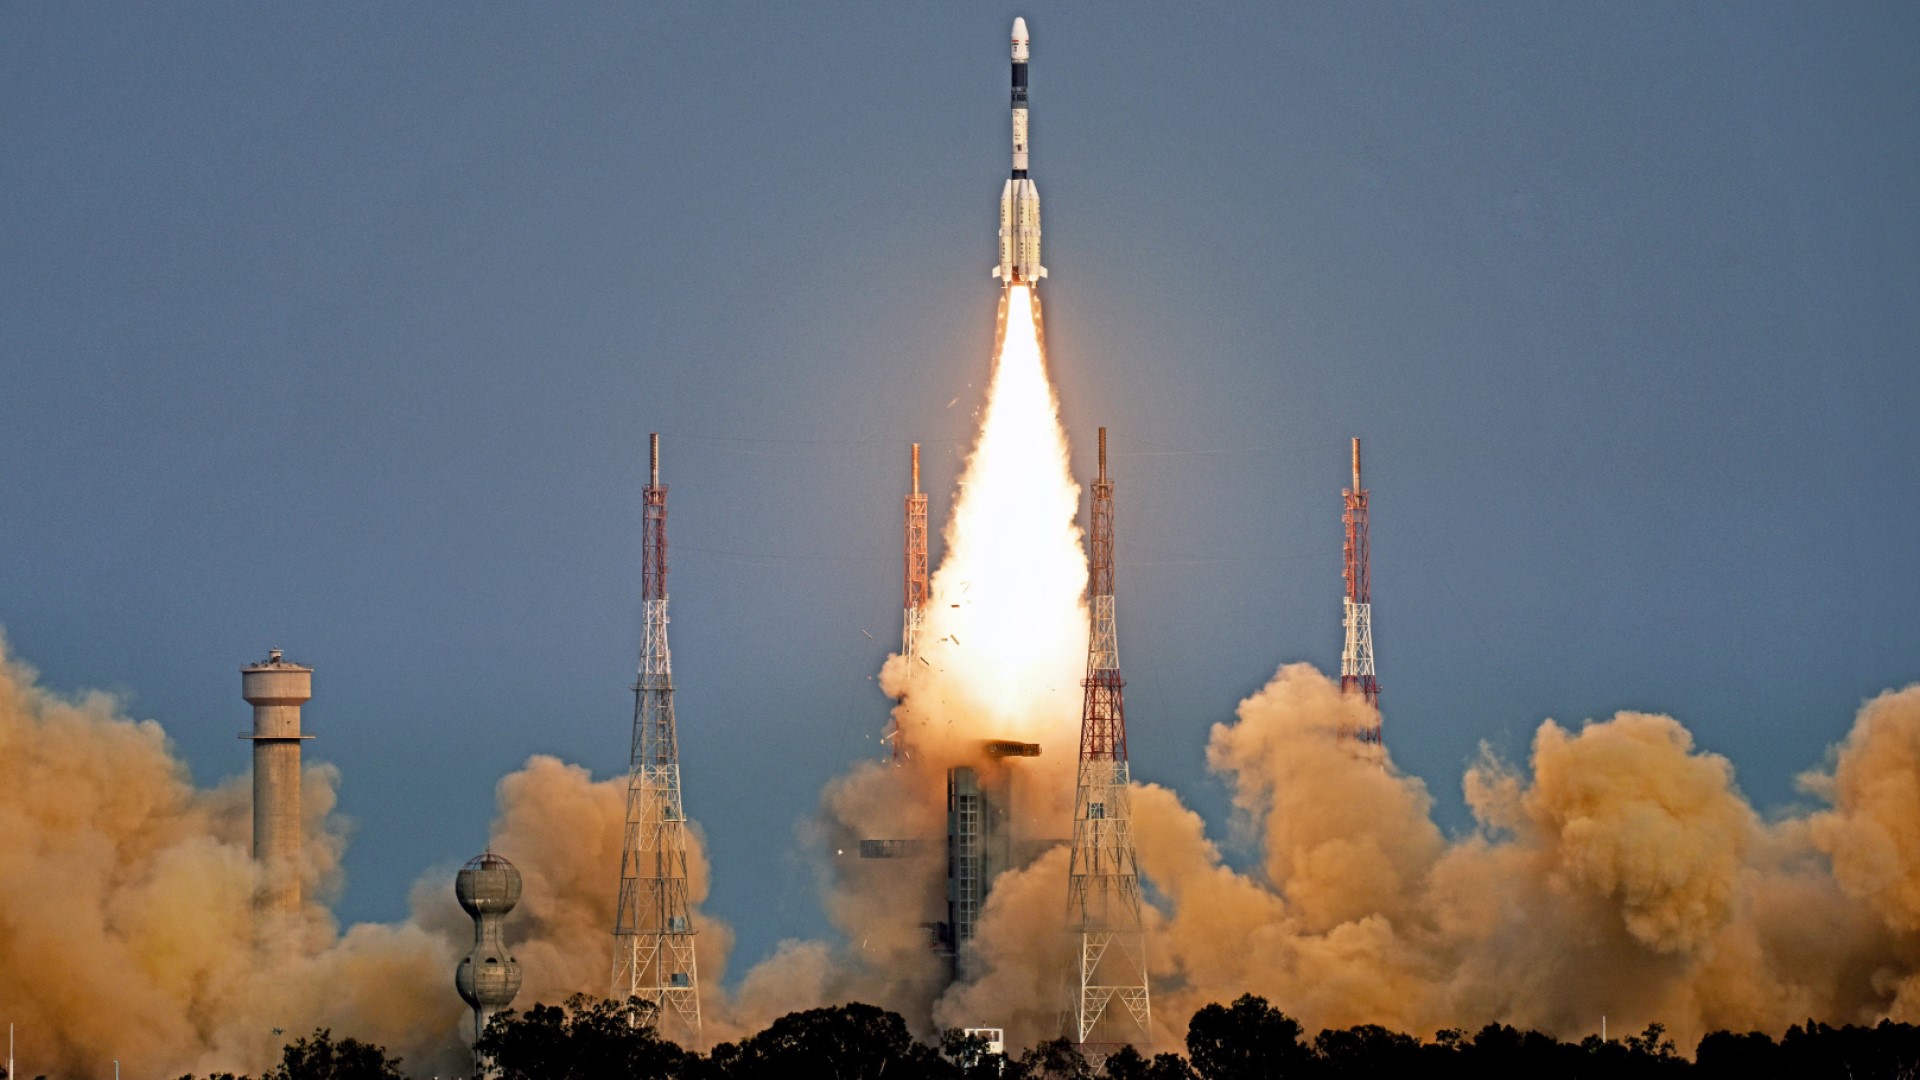 อินเดียจะปล่อยภารกิจ IRNSS-1J ส่งดาวเทียมระบบนำทางภูมิภาคอินเดีย